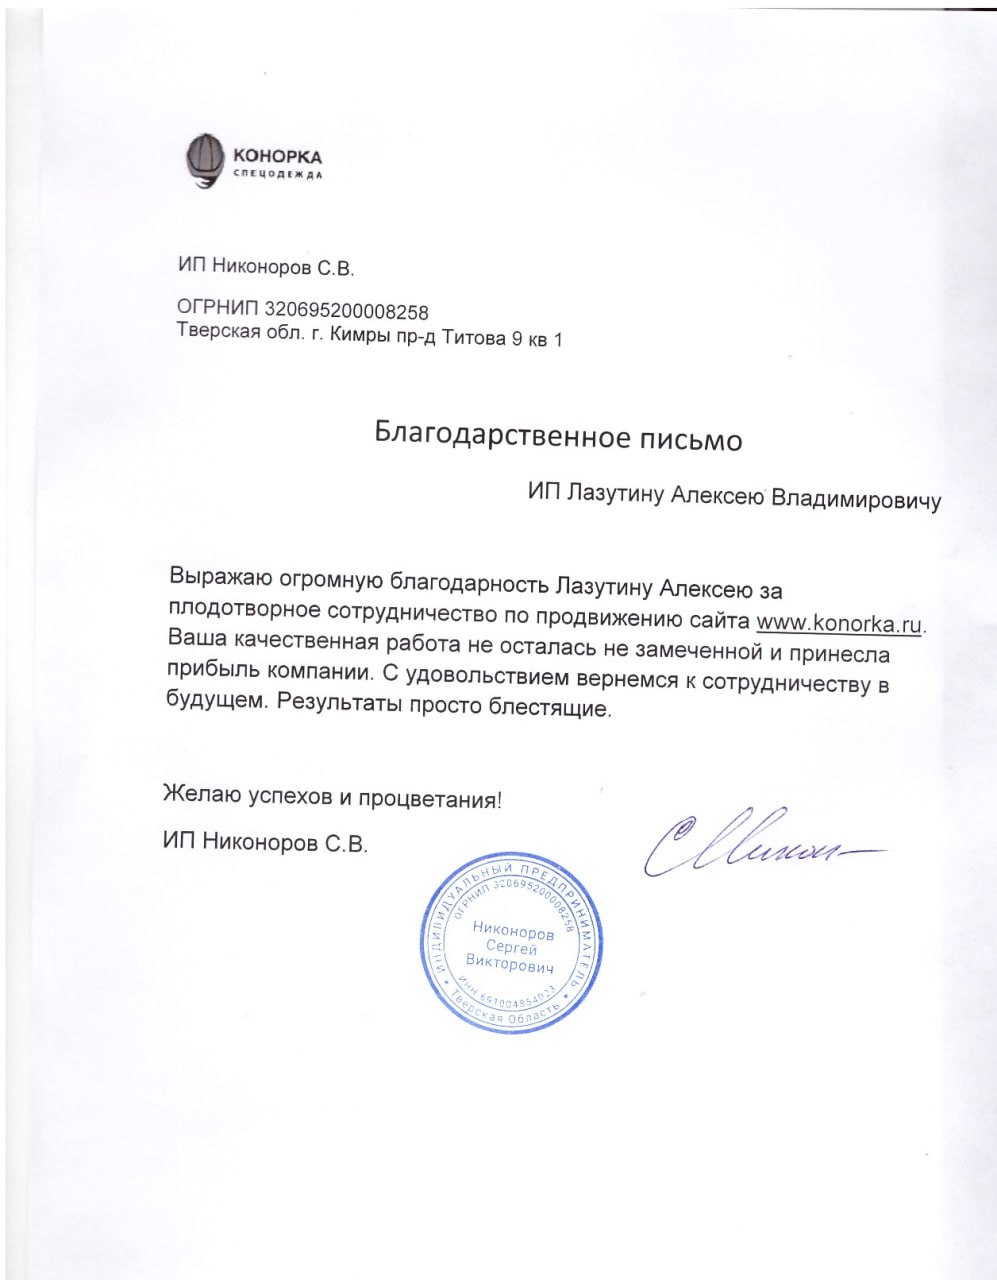 Отзыв компании Конорка о работе Алексея Лазутина.